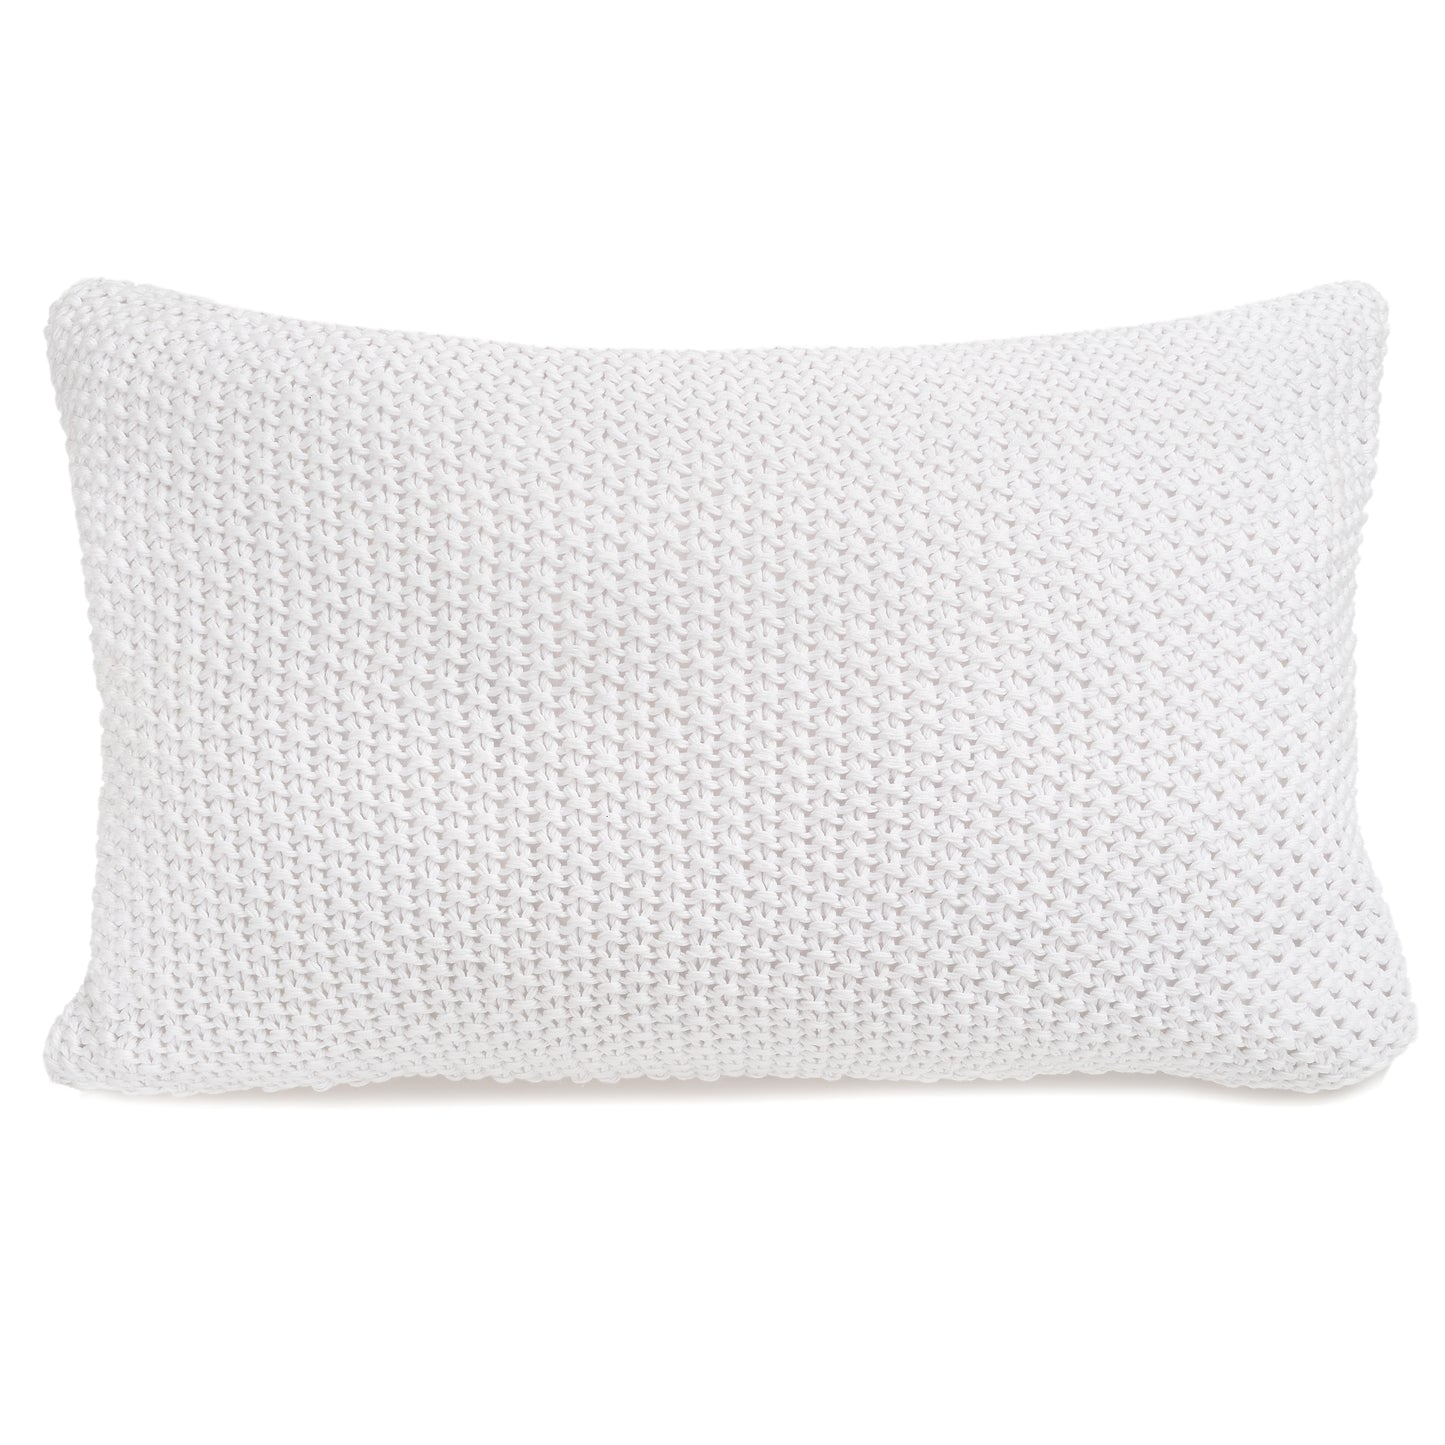 Jamie Pillow - White 16"x24"